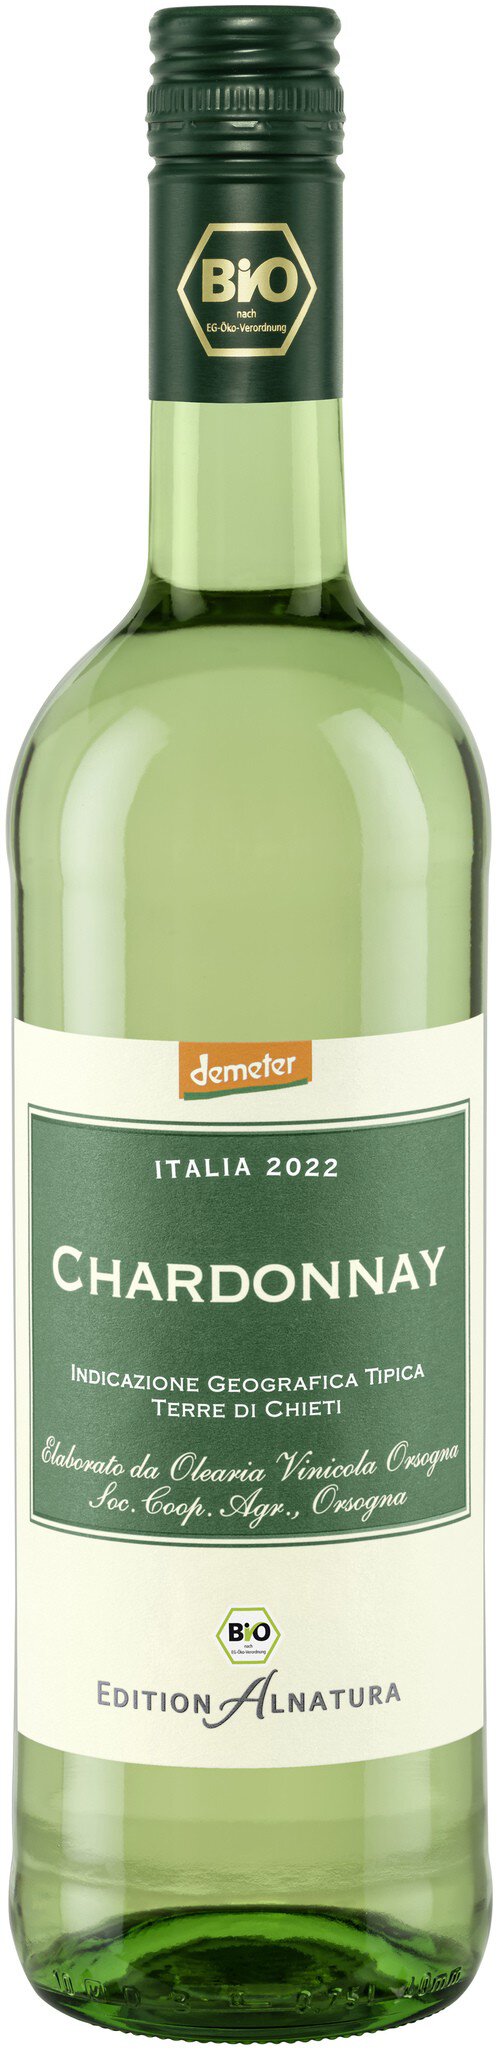 Edition in von Alnatura ml) (750 Chardonnay Bio-Qualität